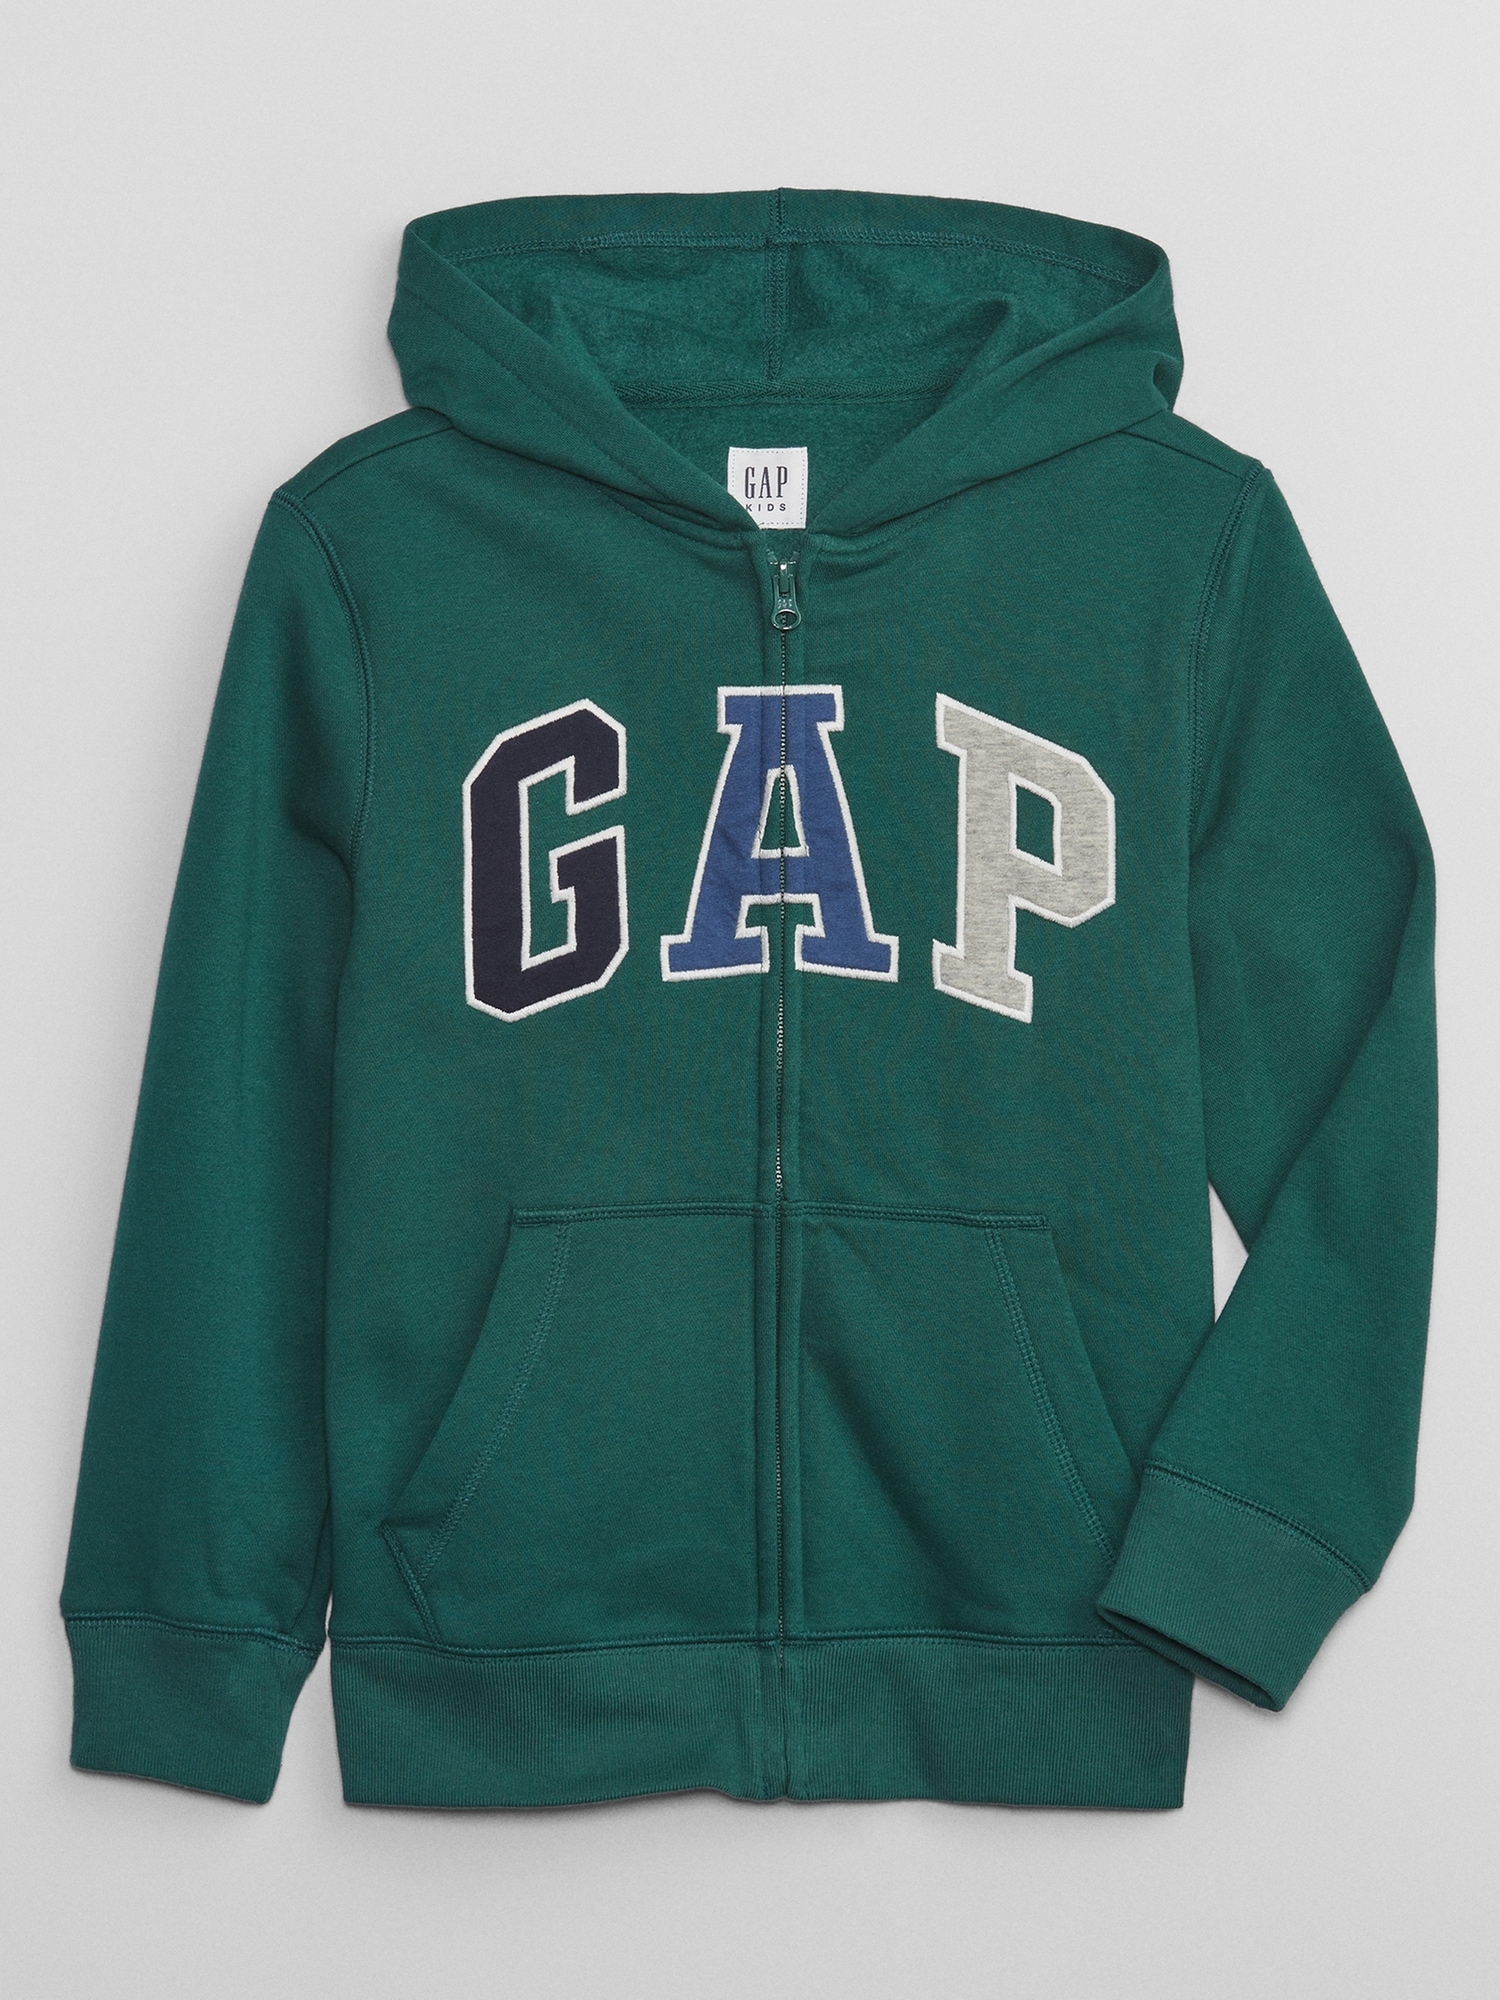 Kids Gap Logo Zip Hoodie | Gap Factory